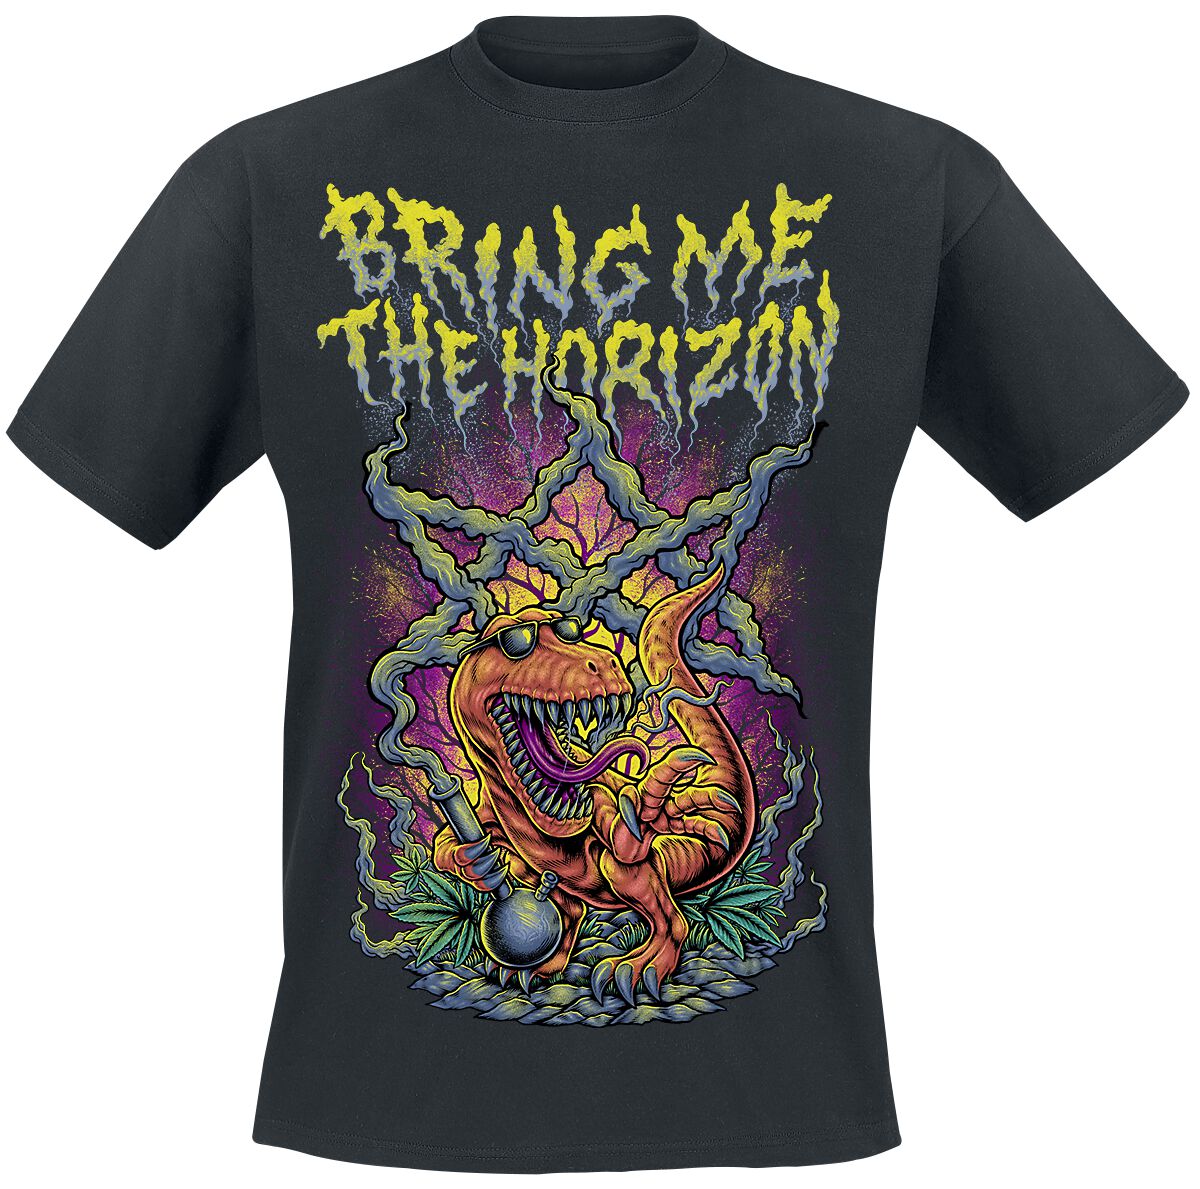 Bring Me The Horizon Smoking Dinosaur T-Shirt schwarz in S